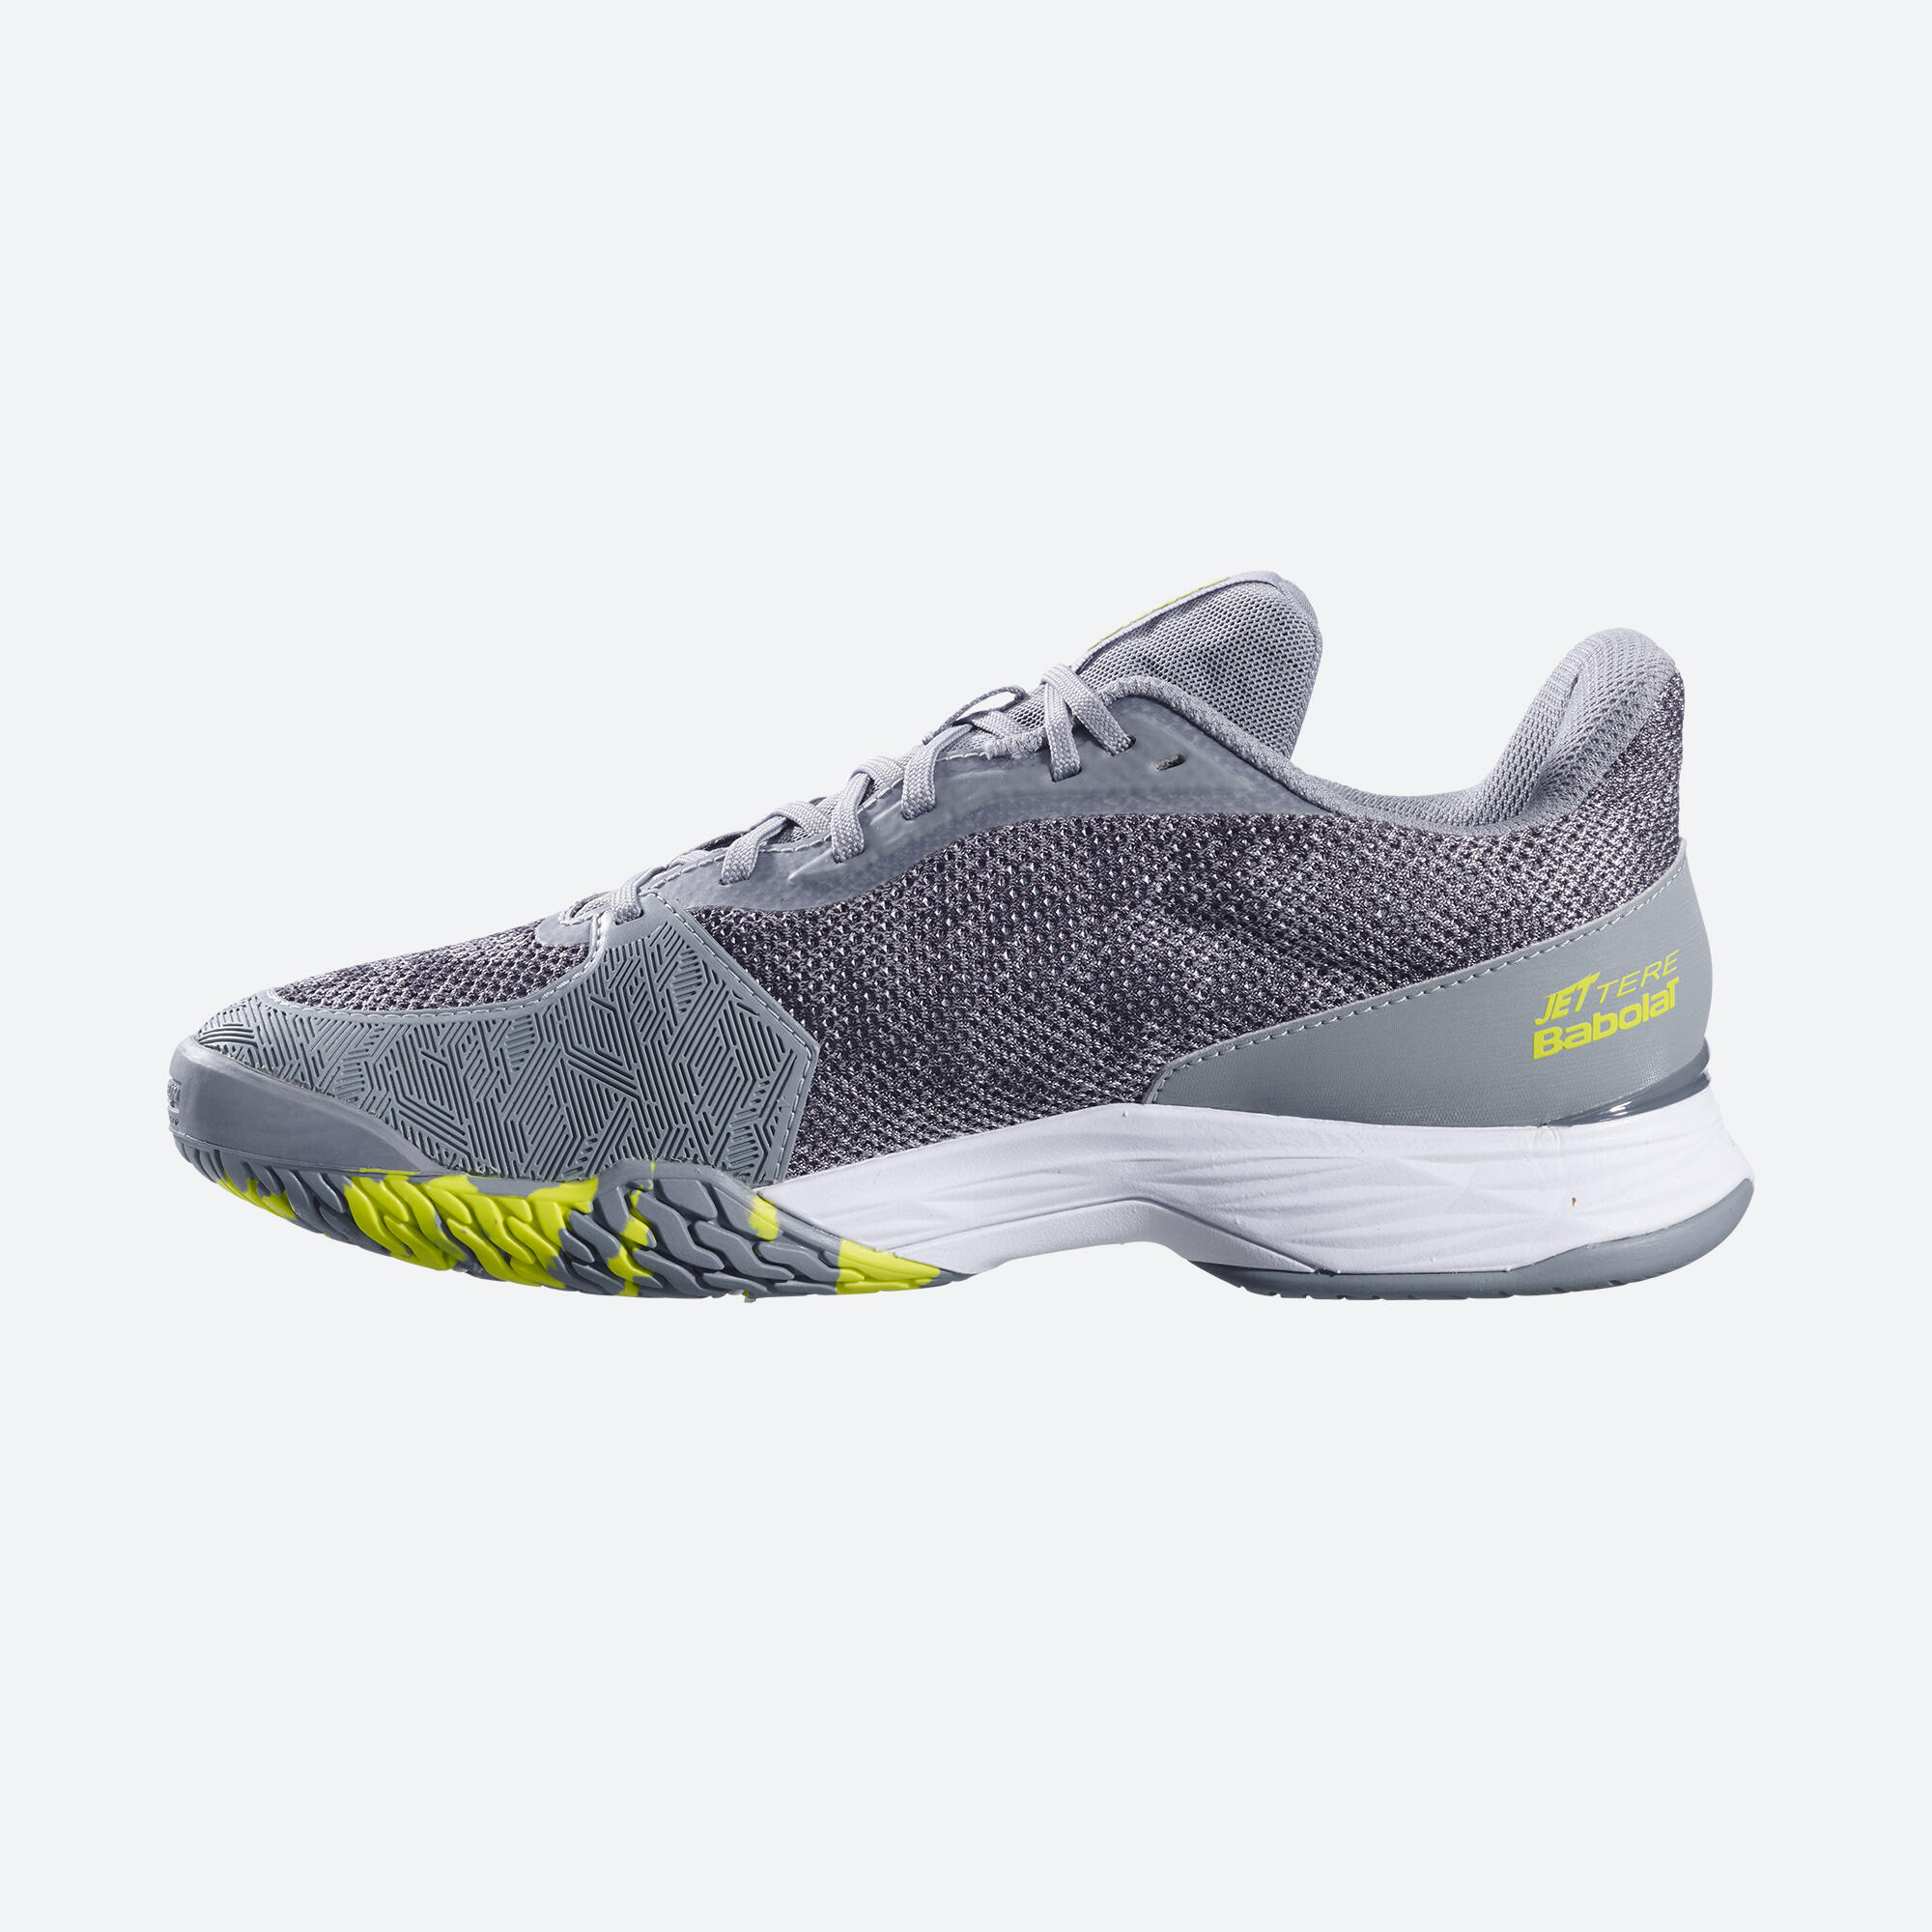 Men's Multicourt Tennis Shoes Jet Tere - Grey/White 2/5